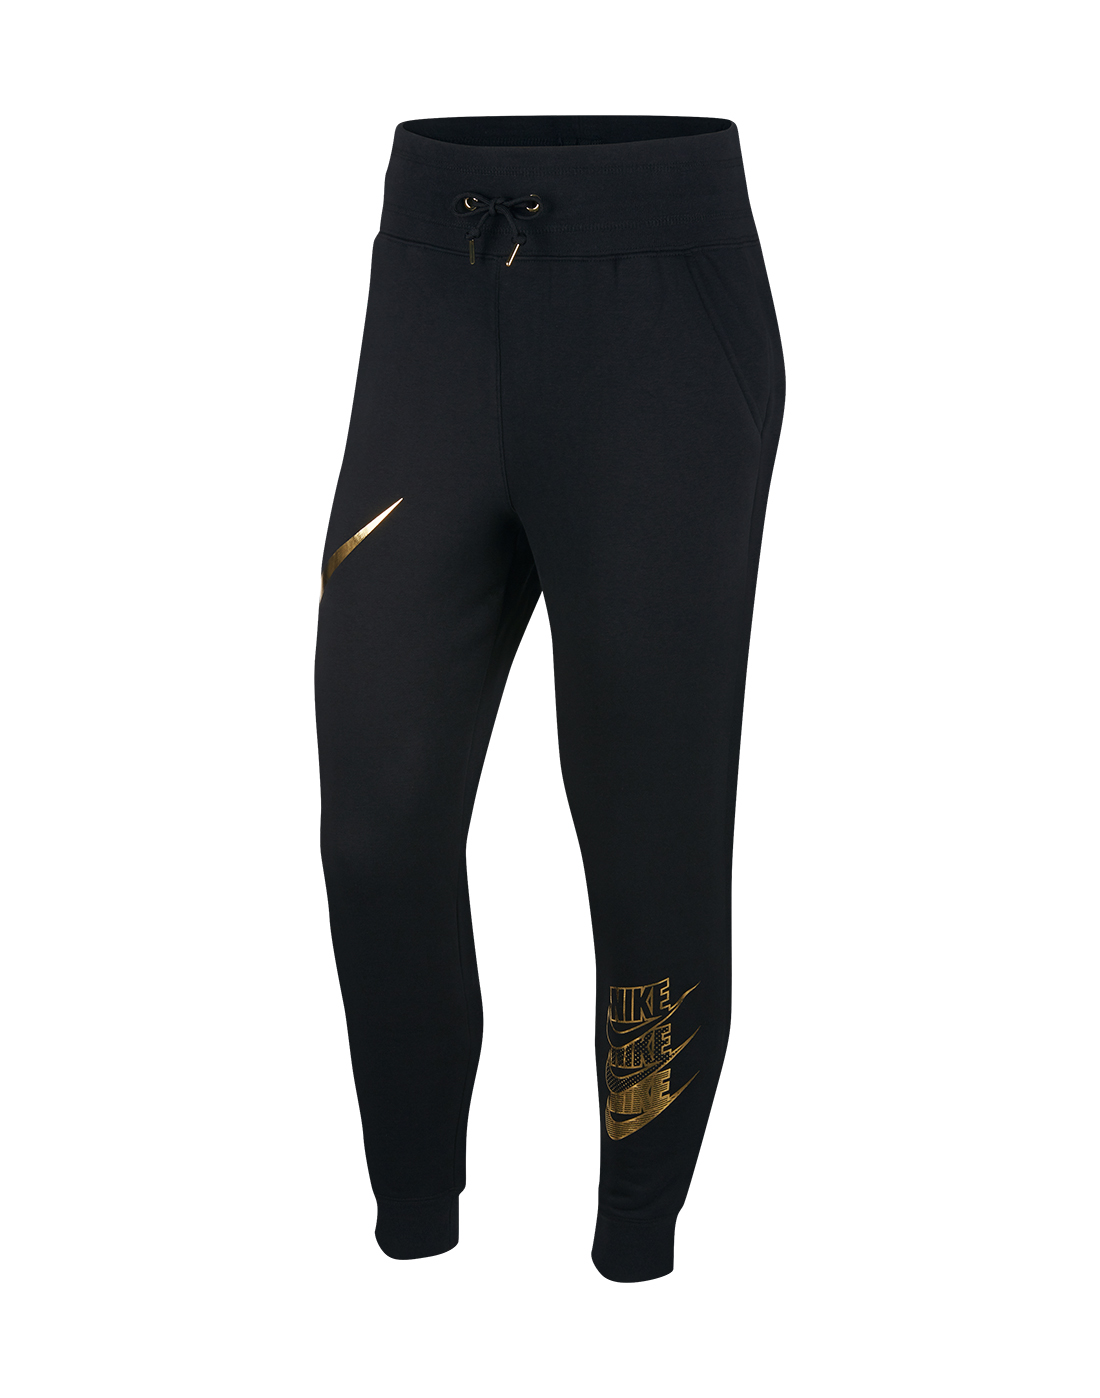 Nike Womens Shine Pants - Black | Life Style Sports IE